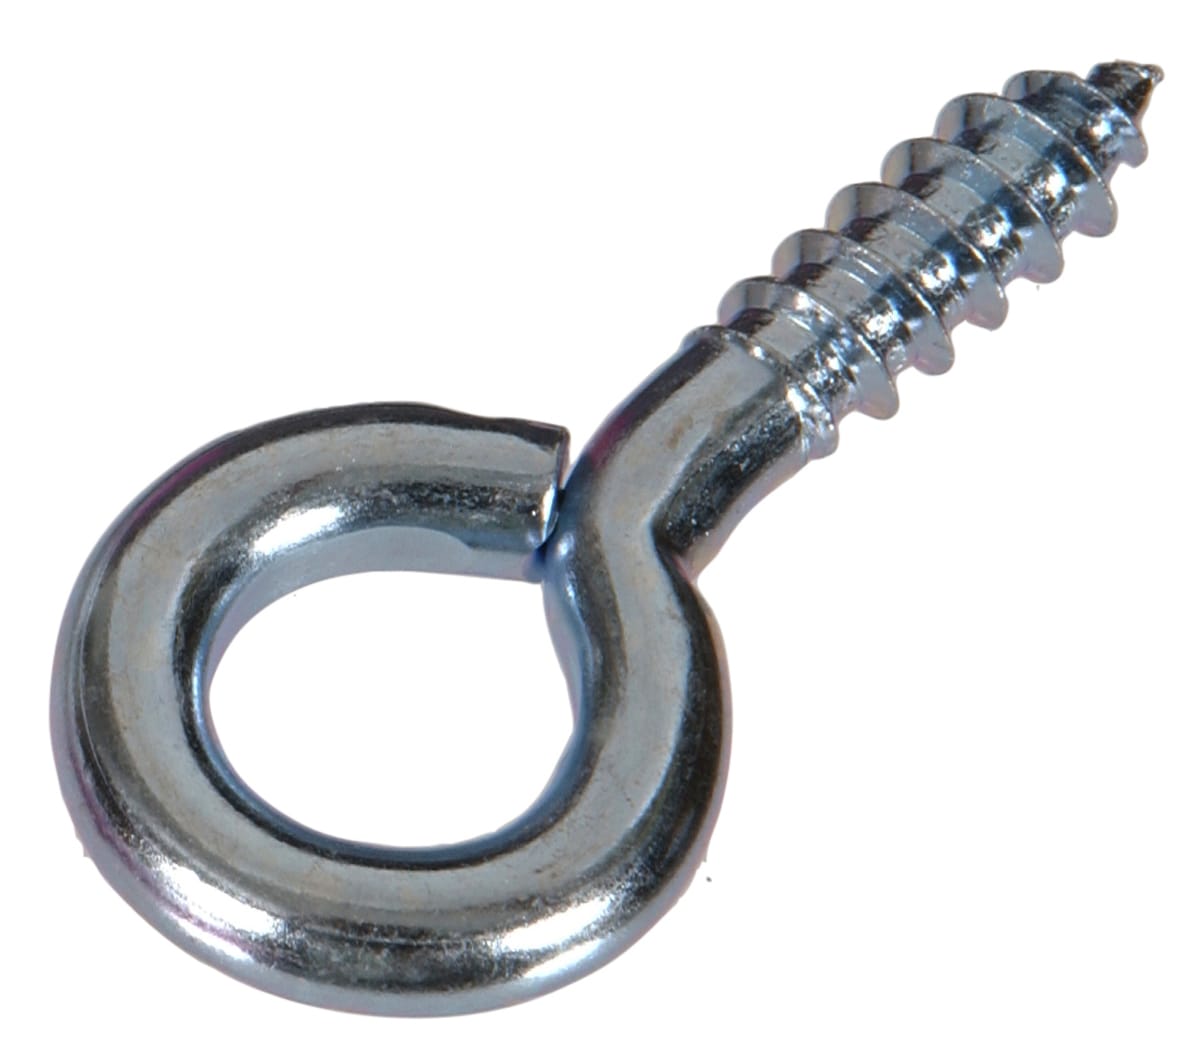 DGOL 10 pcs 2-1/2 Inch 304 Stainless Steel Screw-in Hooks Eye Bolt Ceiling  Hook Screw Hanger Open Loop